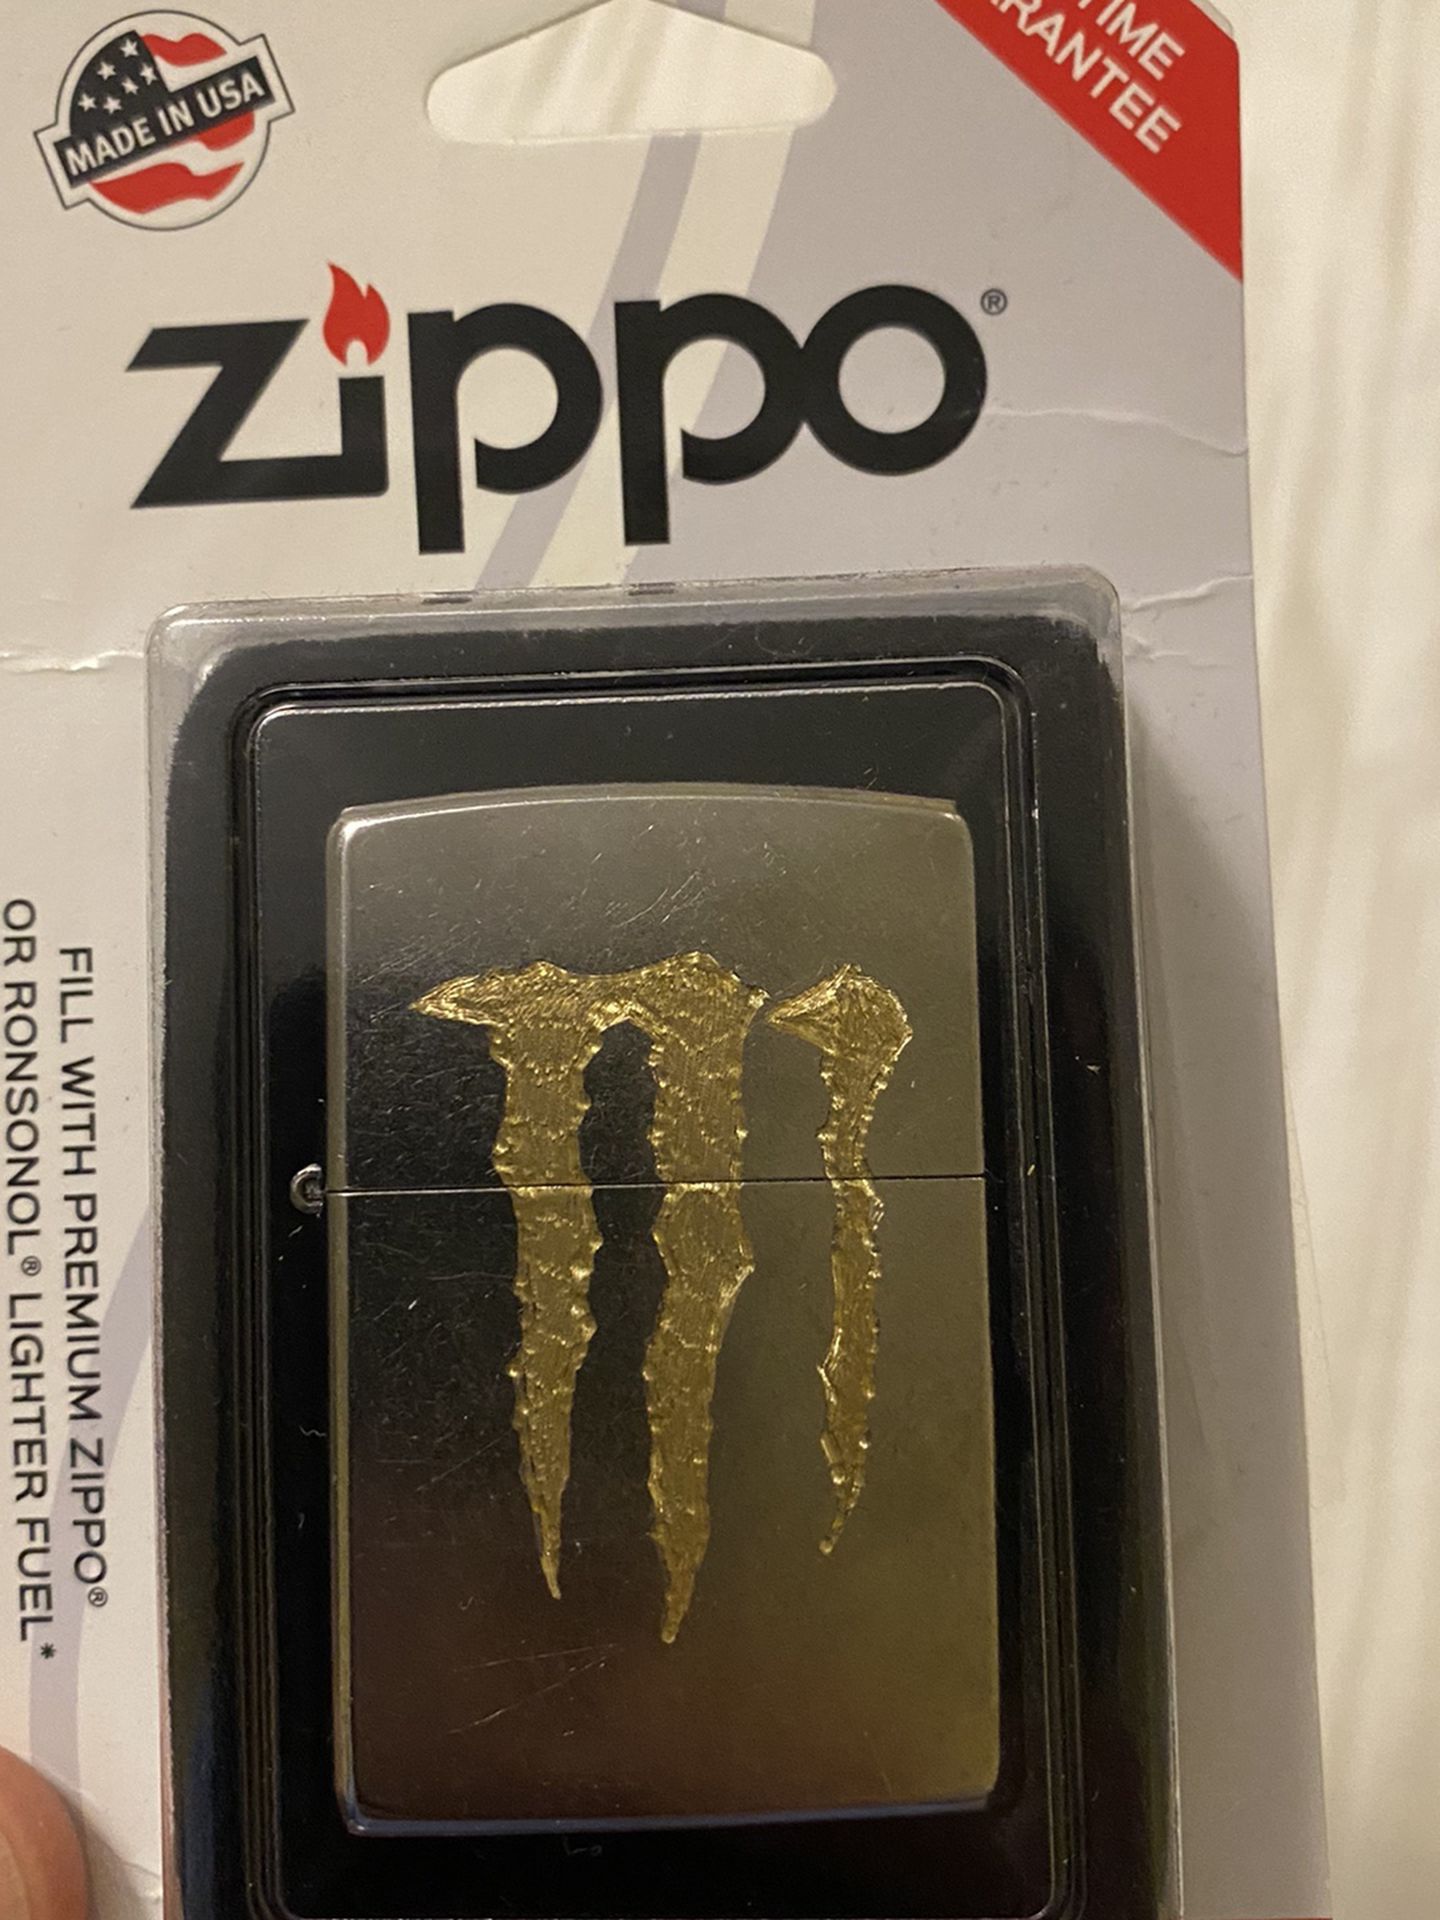 1-Zippo/chrome Monster Energy Lighter